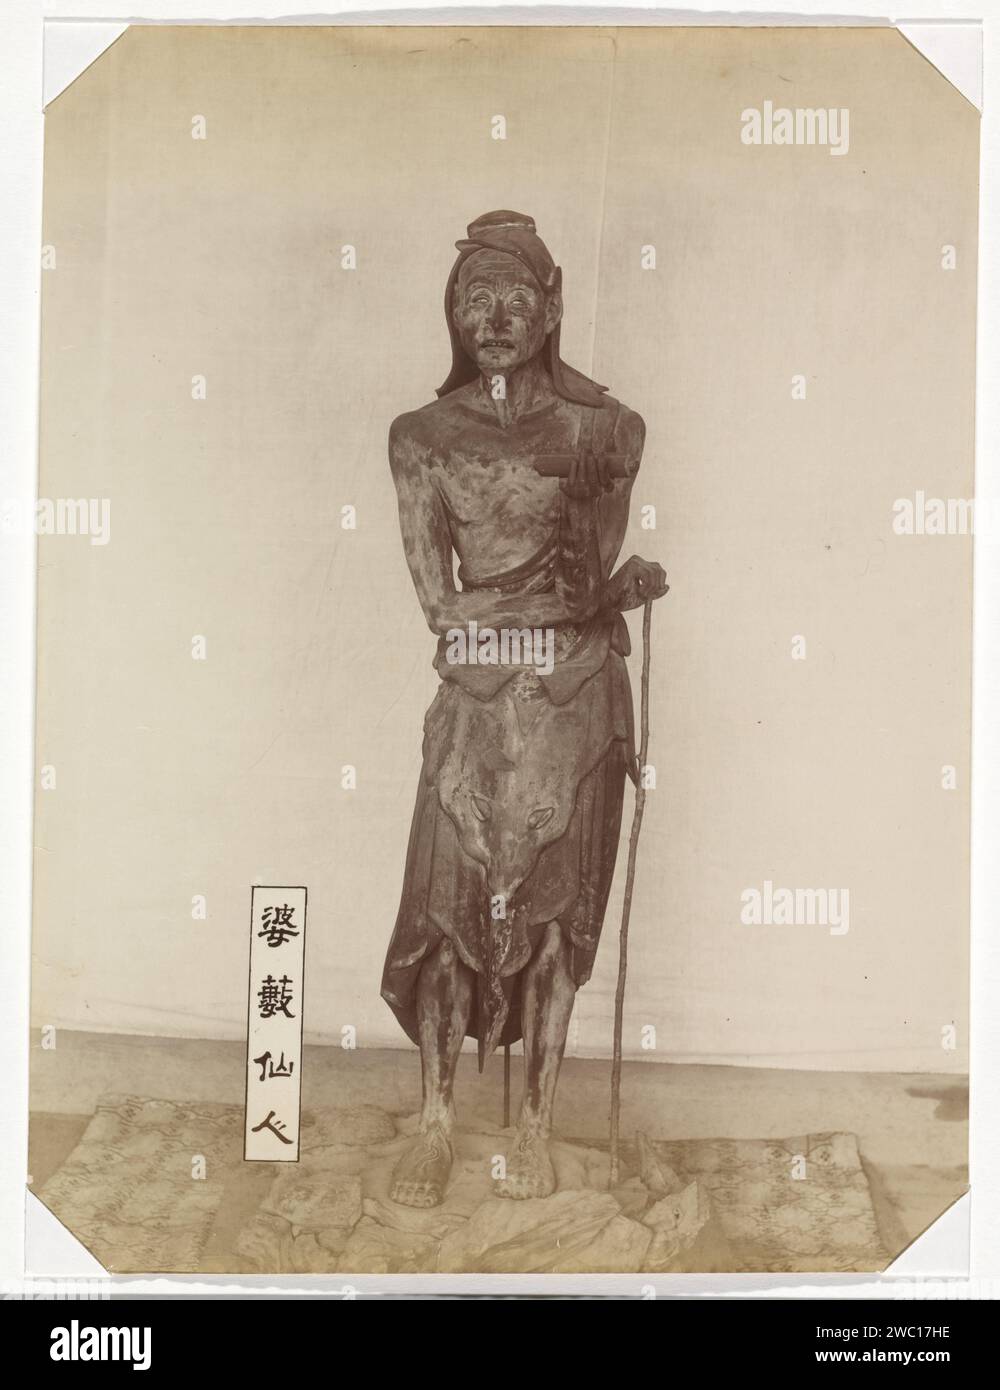 Sculpture du basus immortel dans le temple Sanjusangendo à Kyoto: une figure debout d'un homme maigre avec de longs cheveux, un bâton et un rouleau dans sa main gauche, avec une plaque avec le texte 婆 藪 仙人 仙人 仙人 仙人, 'Basu Sennin à côté de lui sur le sol '(' l'immortel basu '). Basu (Sanskr. Vasu) est représenté comme un ascéet indien ; il apparaît dans les temples bouddhistes japonais comme l'un des assistants de Senju Kannon, le Bodhisattva Avalokiteshvara armé d'un siècle., anonyme, 1890 - 1894 photographie partie de l'album avec 69 photos d'un voyage à travers le Japon. Carton japonais. papier. support photographique imprimé albumine p Banque D'Images